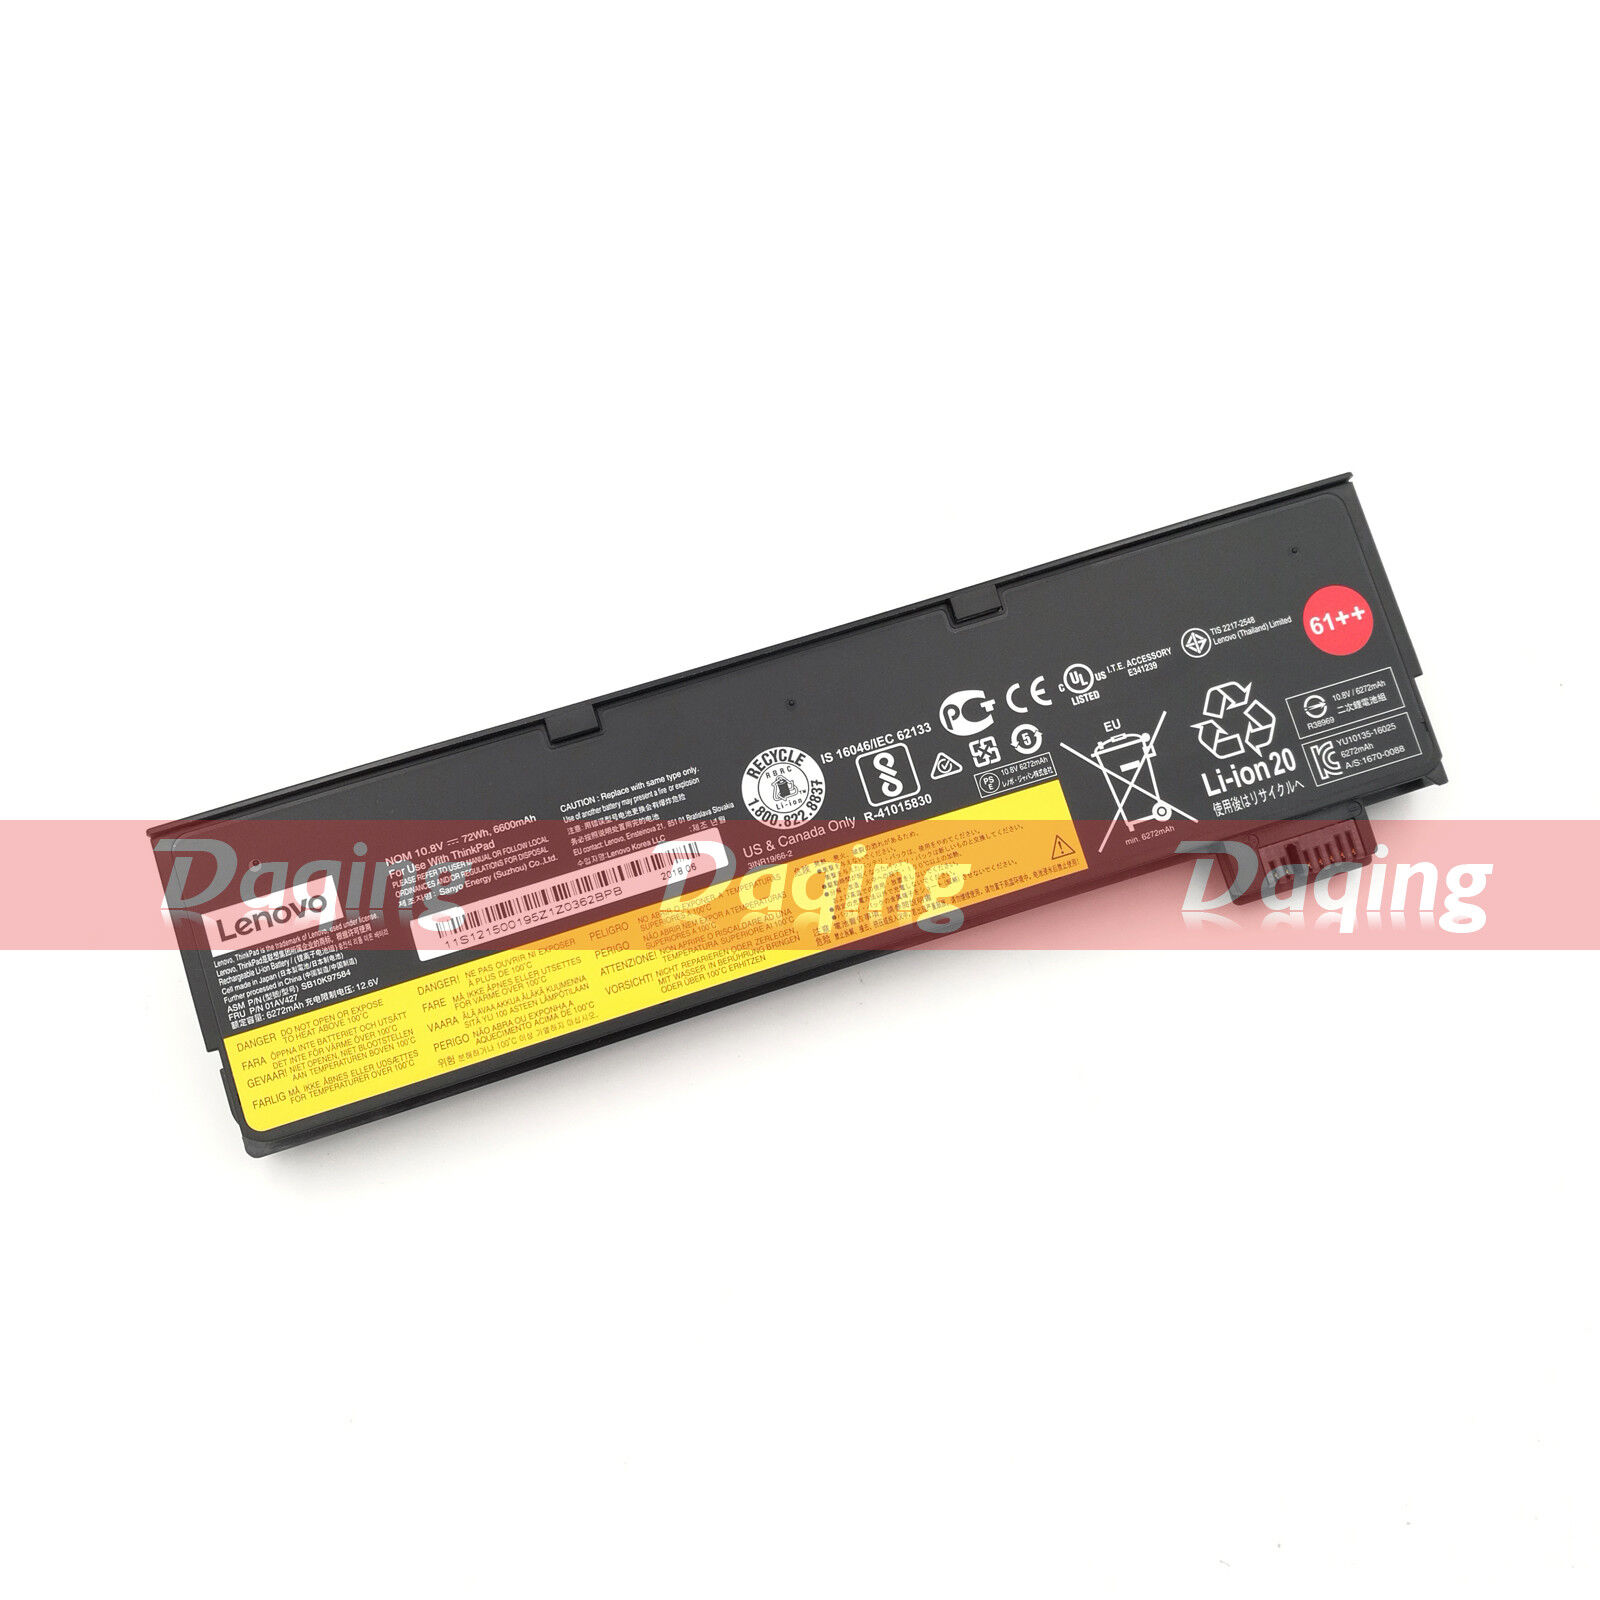 72Wh Original Battery for Lenovo ThinkPad T470 T570 T480 01AV423 01AV424 61++